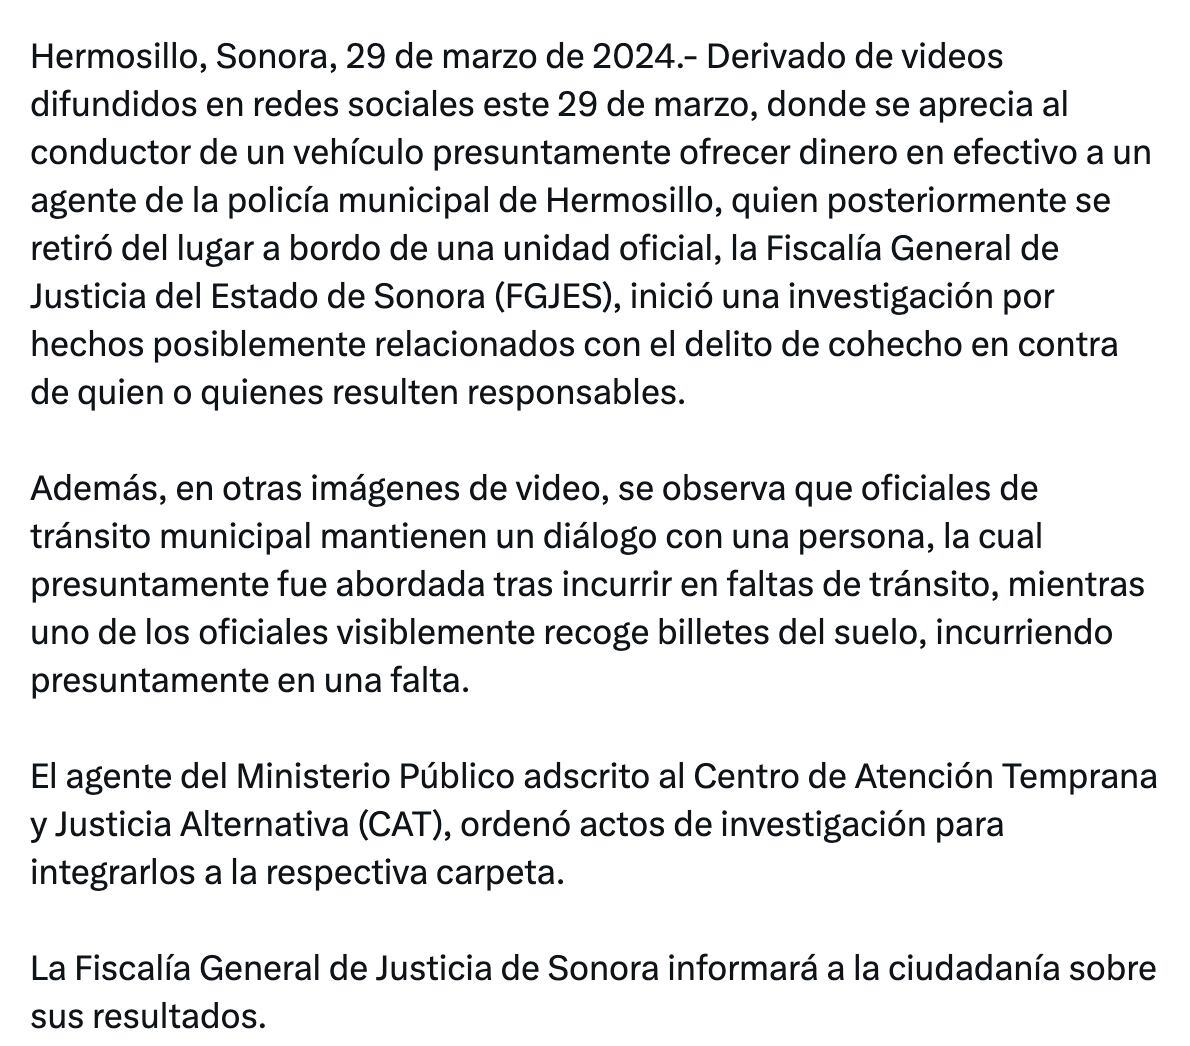 La Fiscalía General de Sonora informó a través de un comunicado que el cantante Natanael Cano será investigado por los presuntos sobornos contra la policía. (Foto: x @fgjesonora)